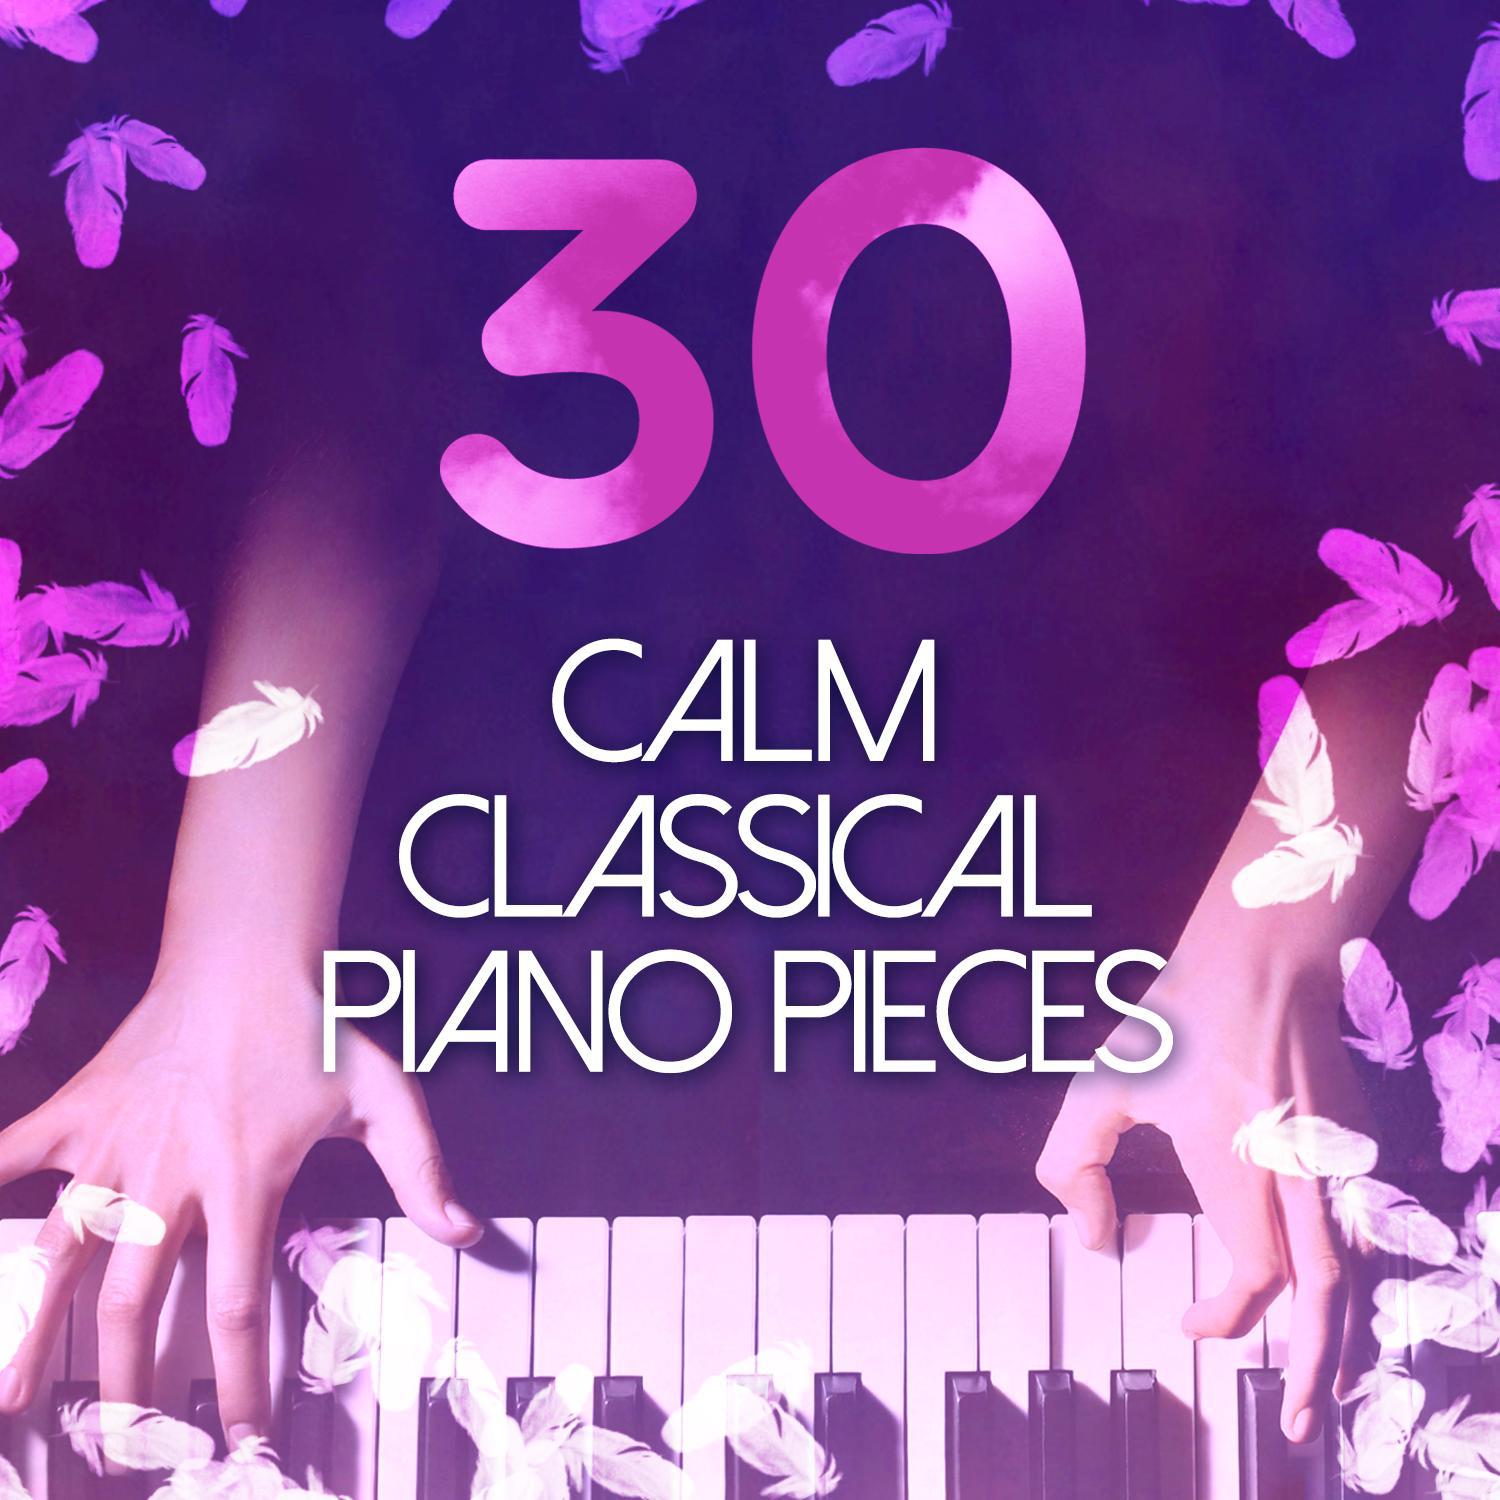 30 Calm Classical Piano Pieces专辑